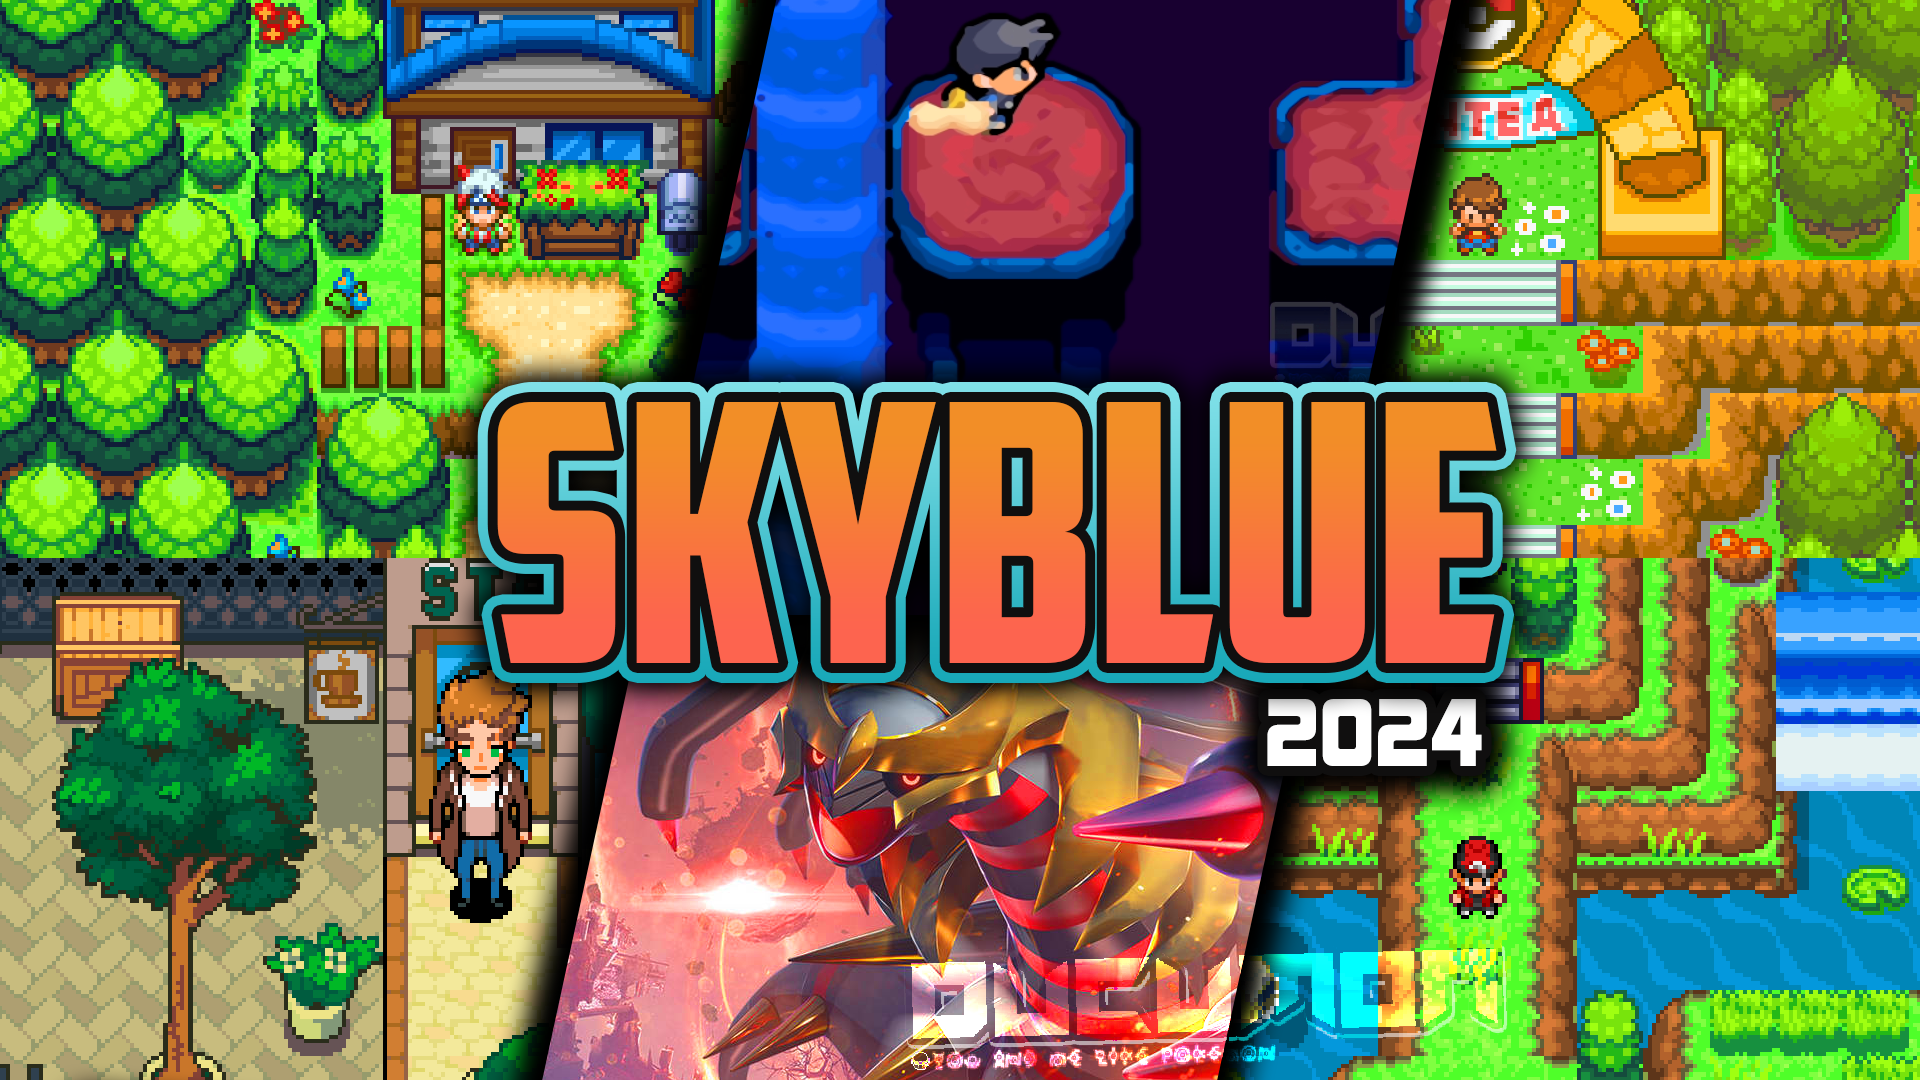 Pokemon Sky Blue 2024 - GBA ROM Взлом, вы сможете посетить 25 забытых миров покемонов в игре.